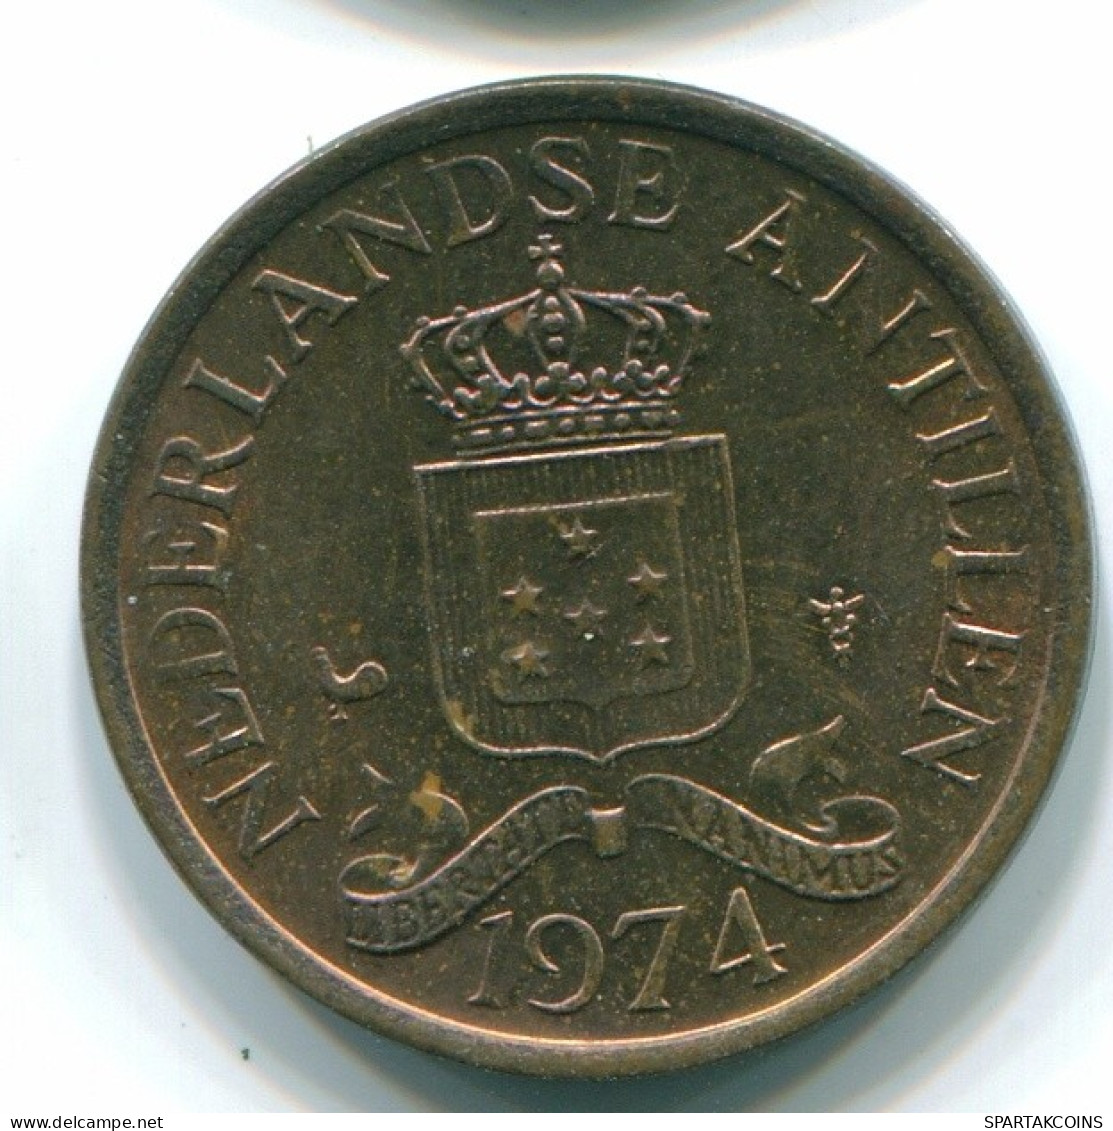 1 CENT 1974 NETHERLANDS ANTILLES Bronze Colonial Coin #S10665.U.A - Antilles Néerlandaises